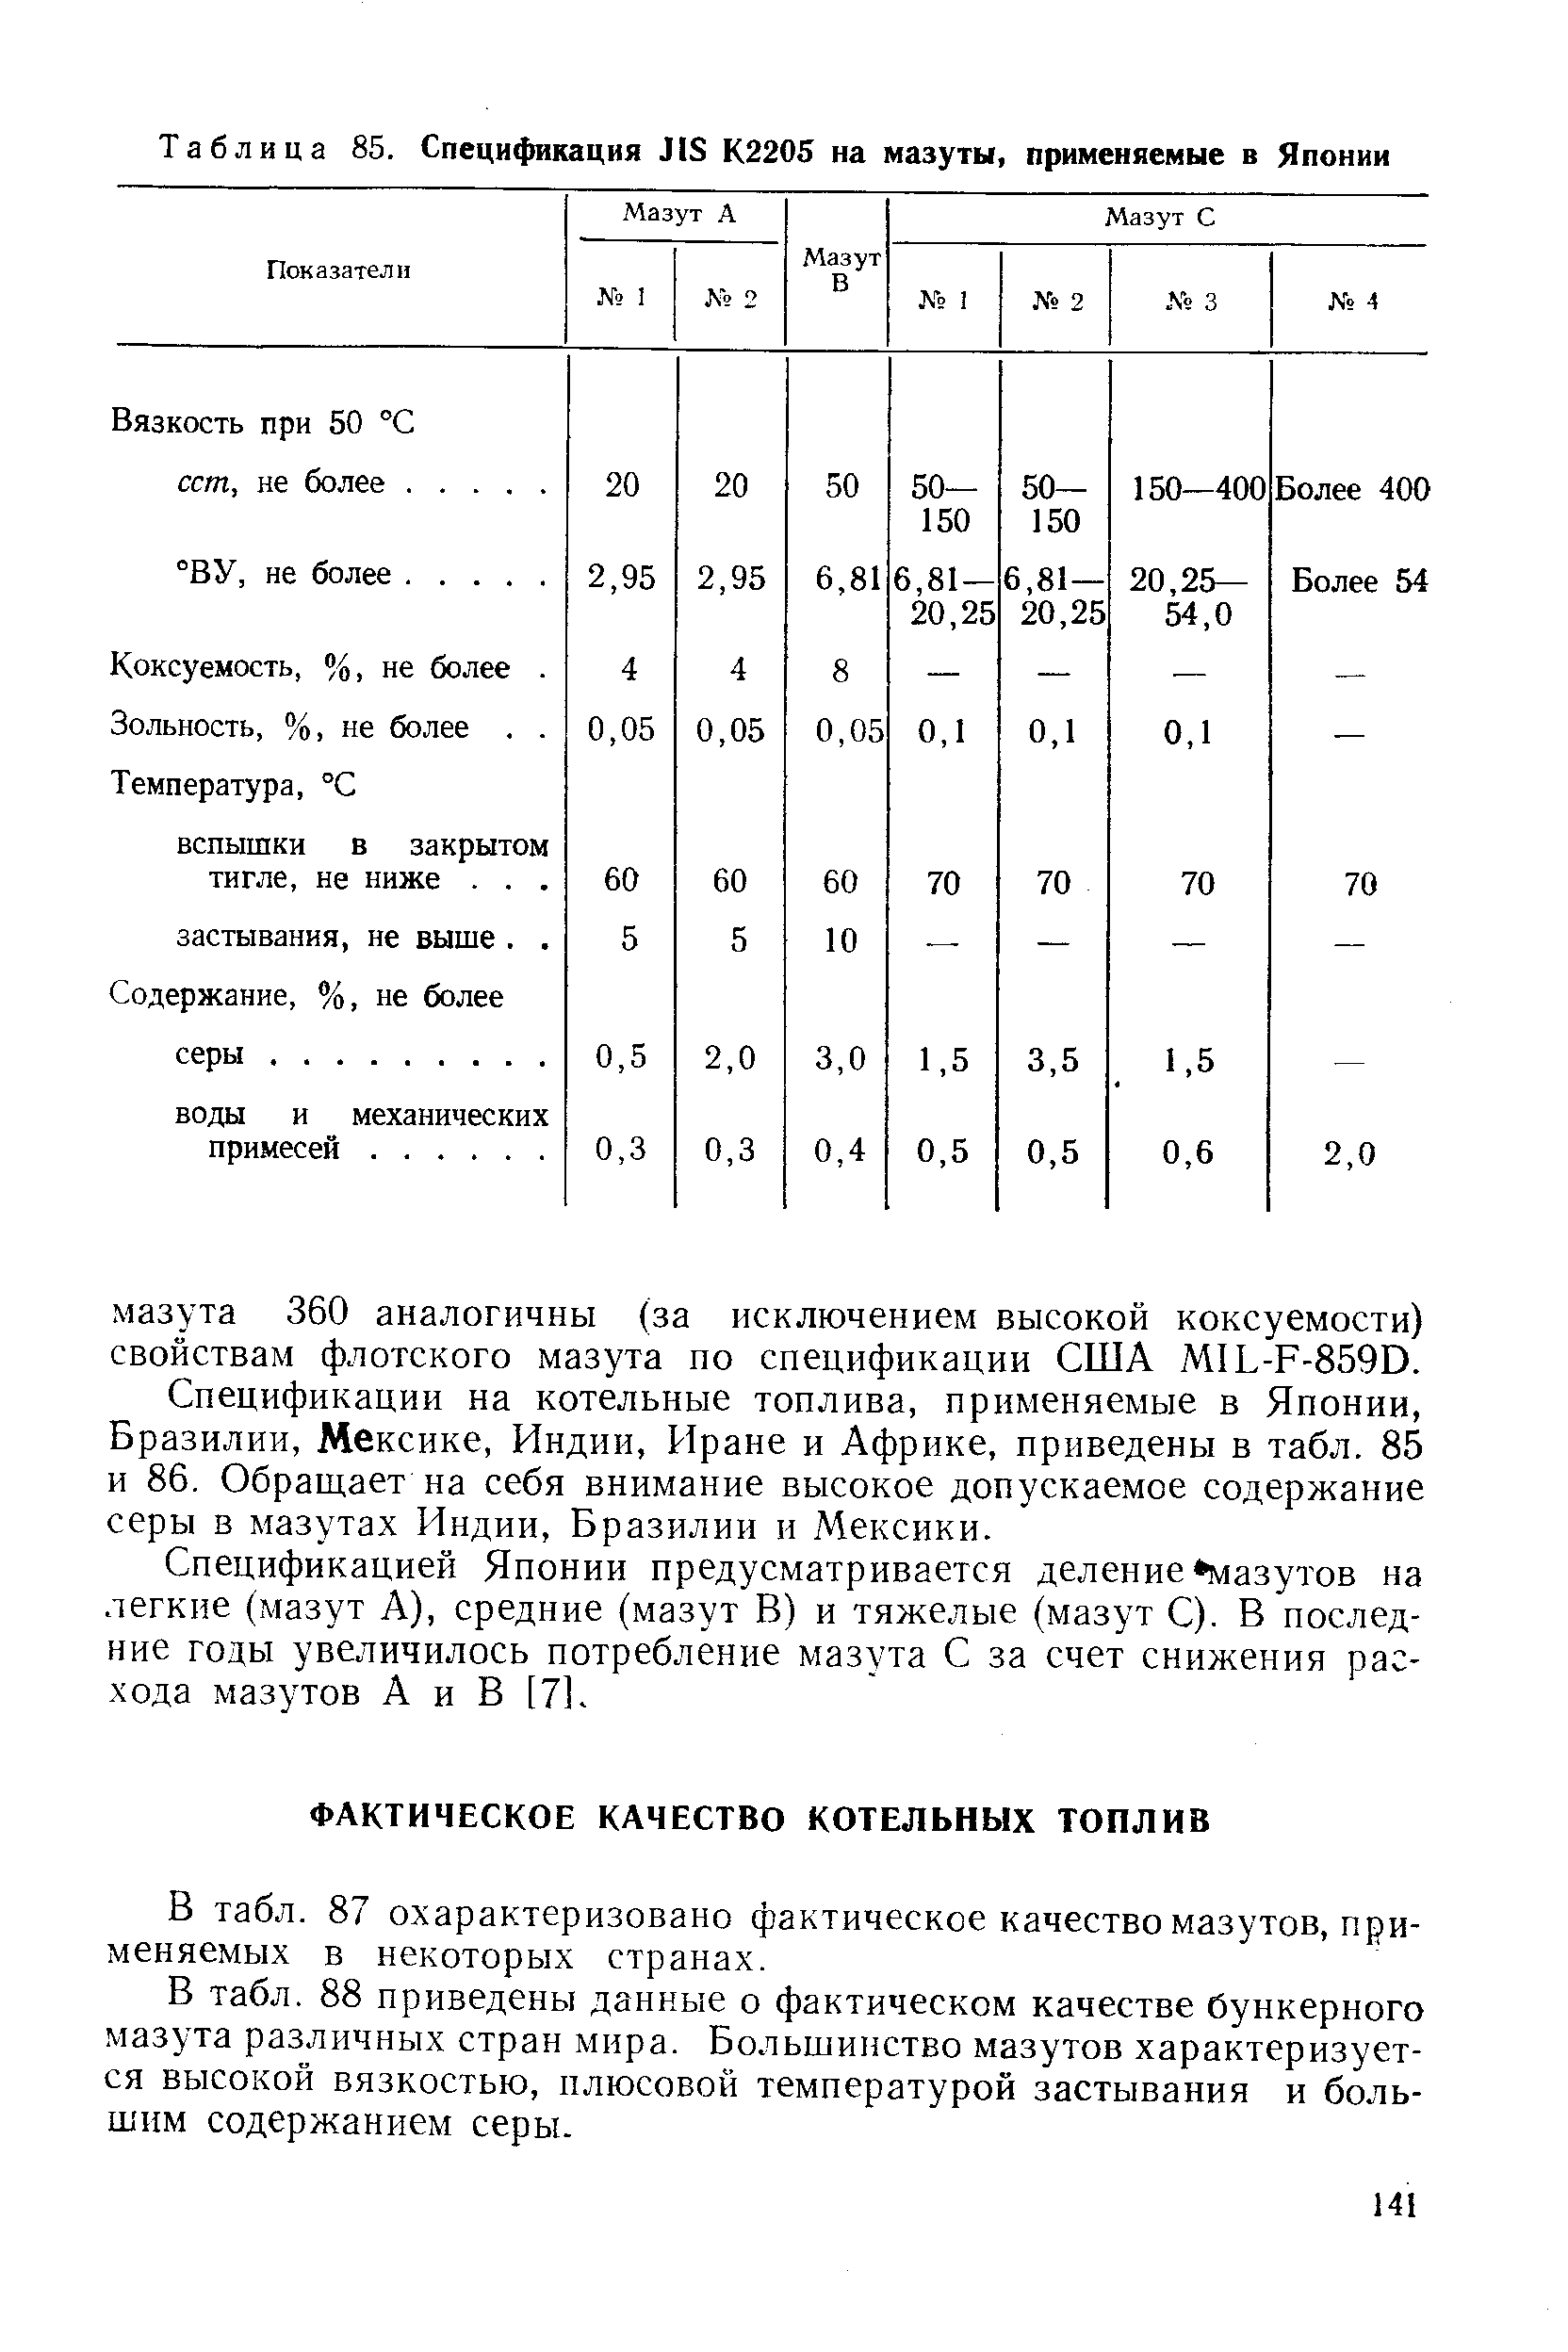 В табл. 87 охарактеризовано фактическое качество мазутов, применяемых в некоторых странах.